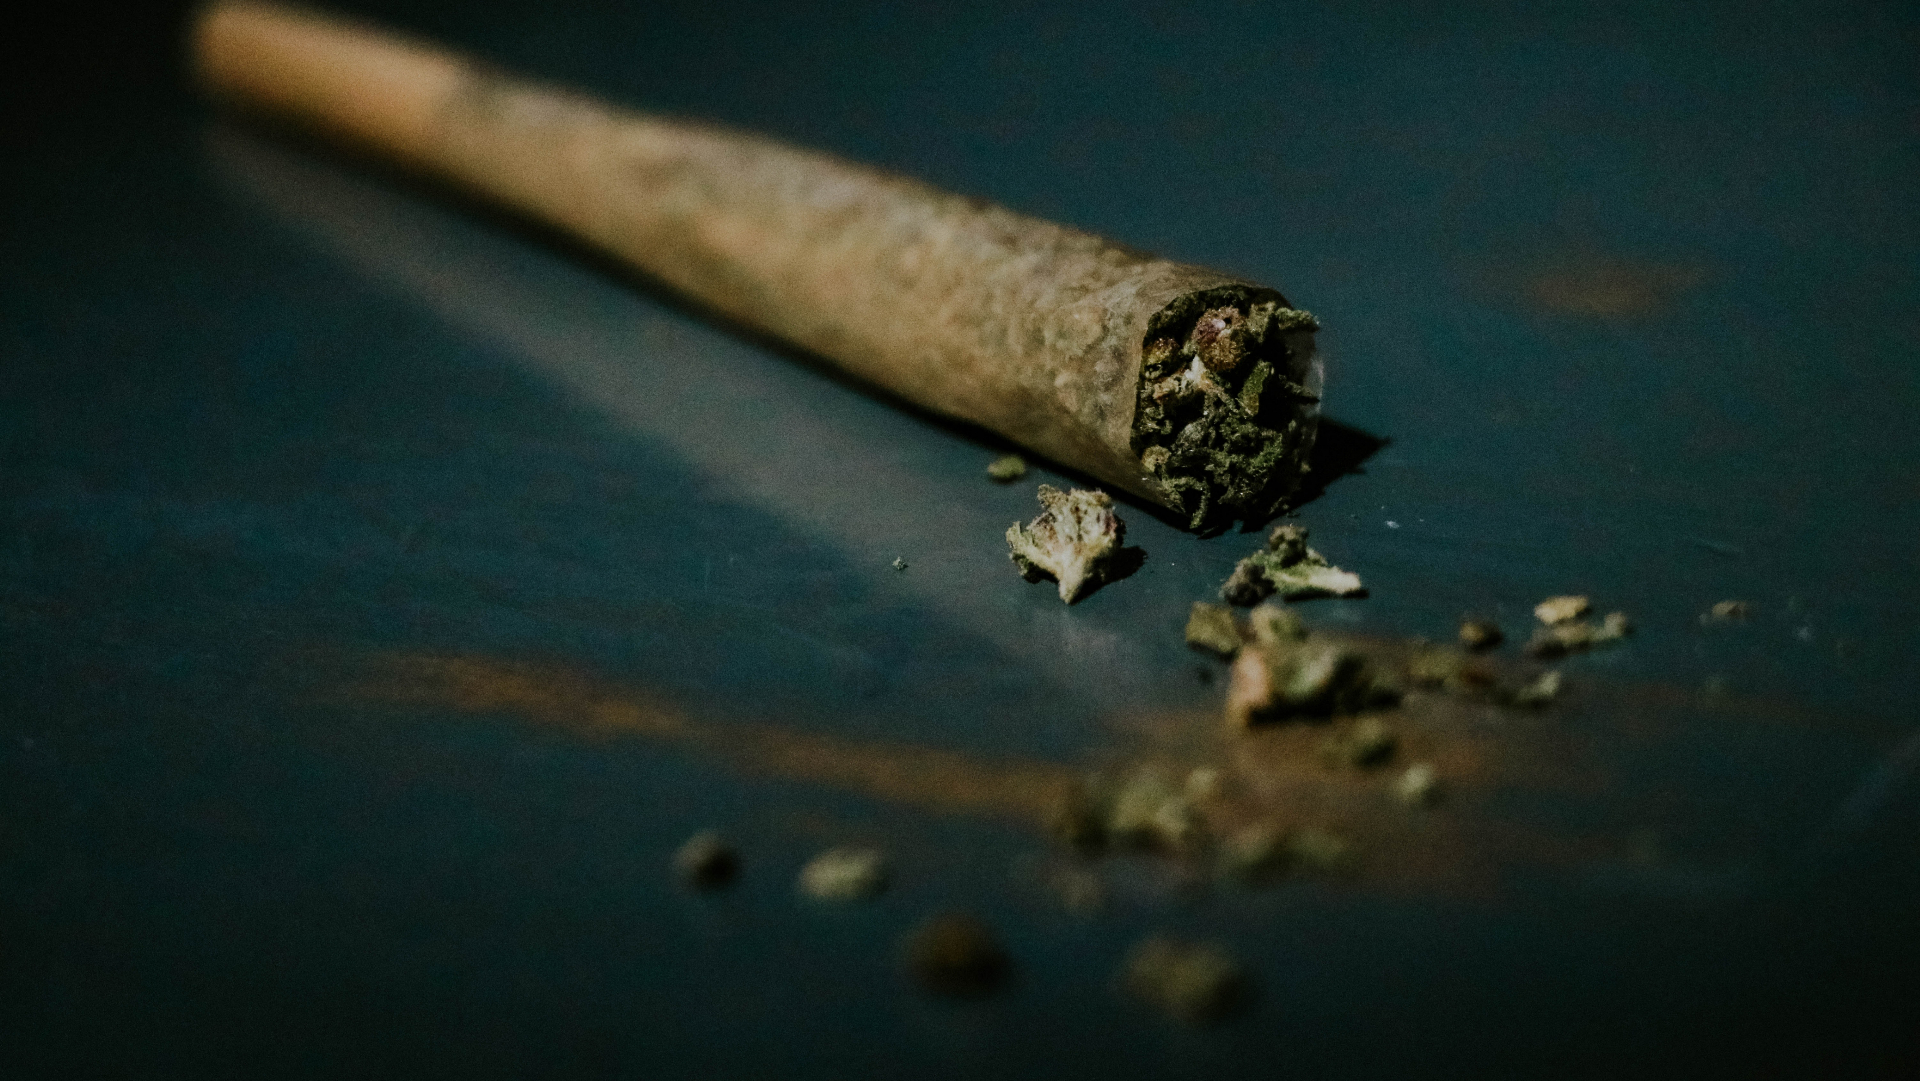 marihuana zrolovaná do papierika, tzv. joint